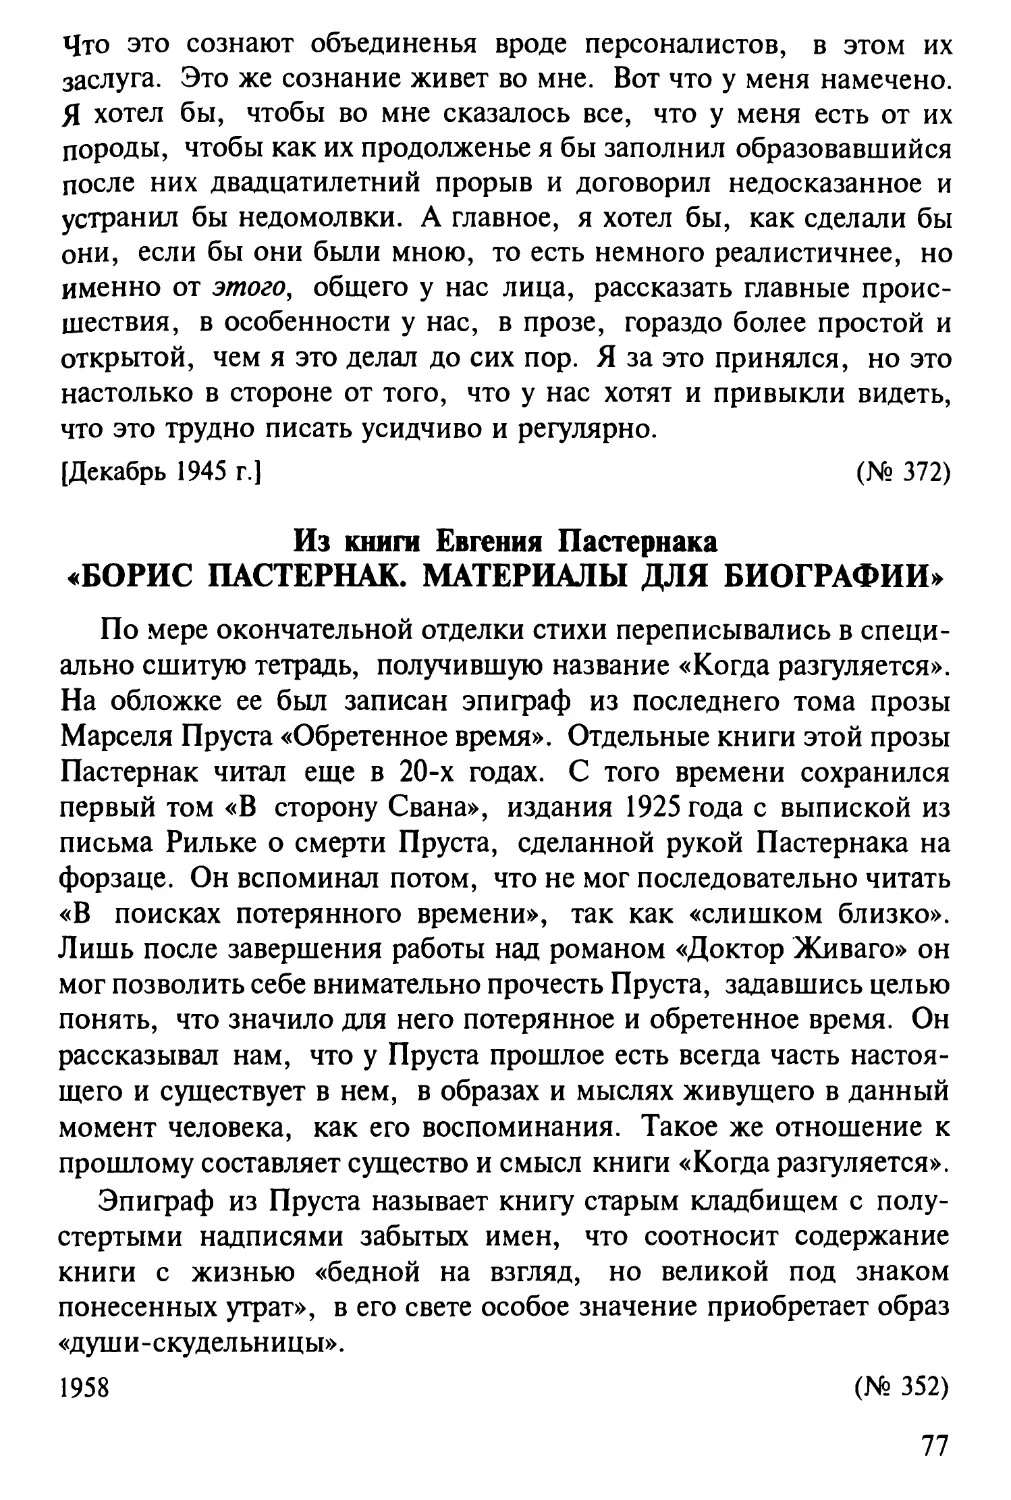 Из книги Е.Б.Пастернака «Борис Пастернак. Материалы для биографии»